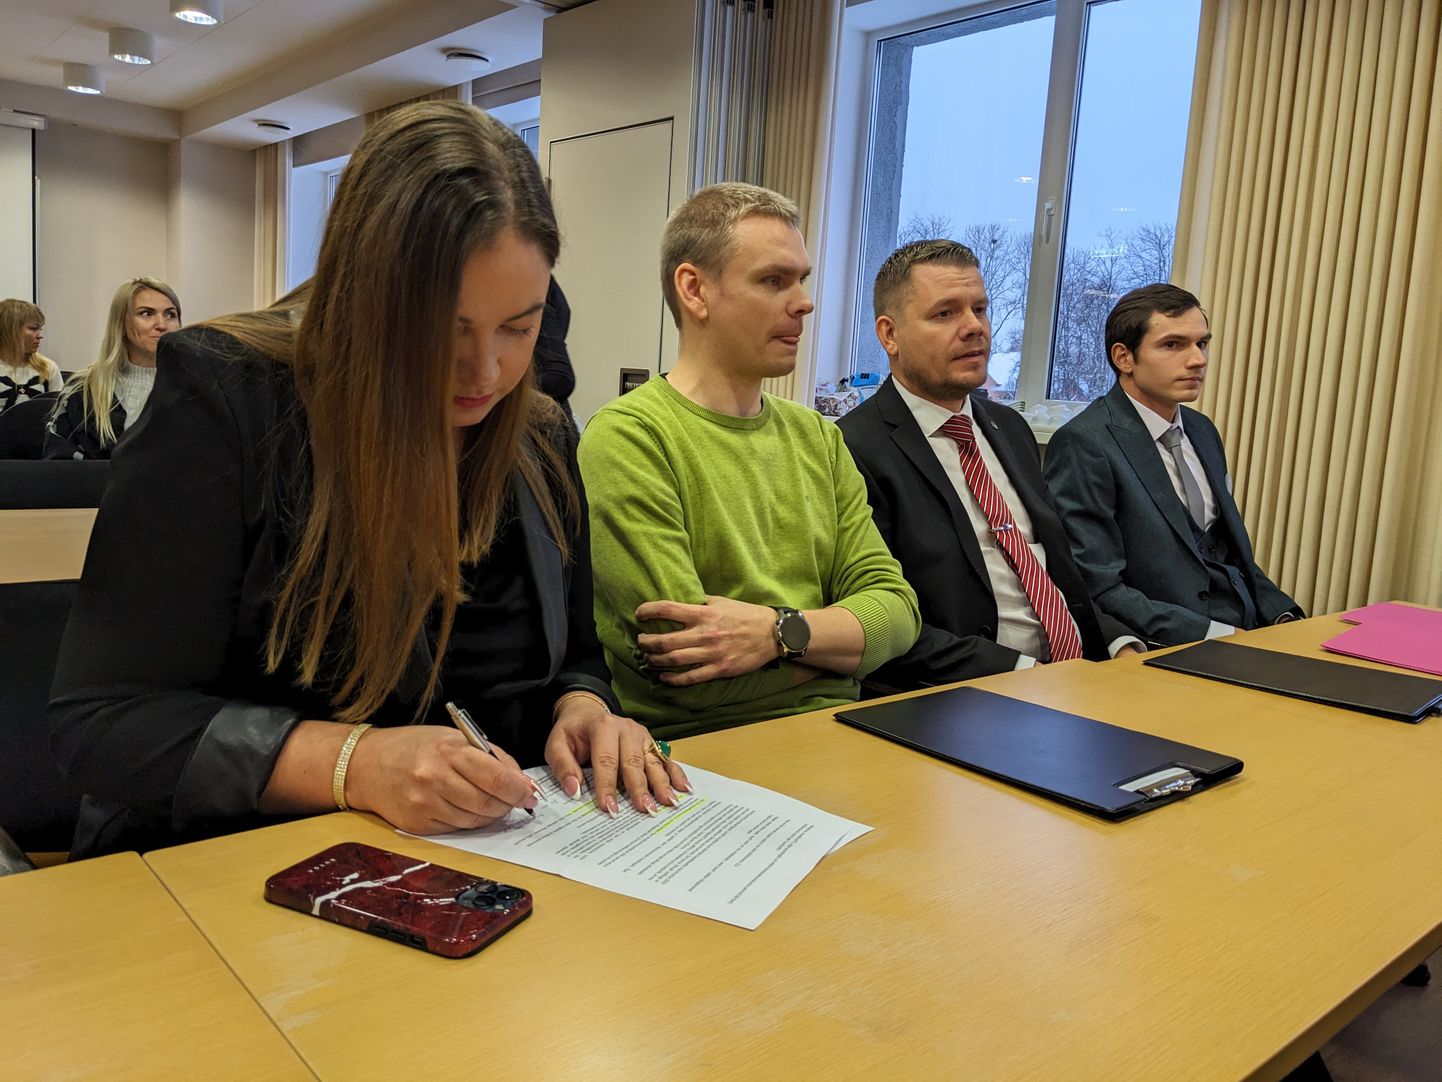 Kohtla-Järve uut linnavalitsust toetas volikogus 14 liiget.